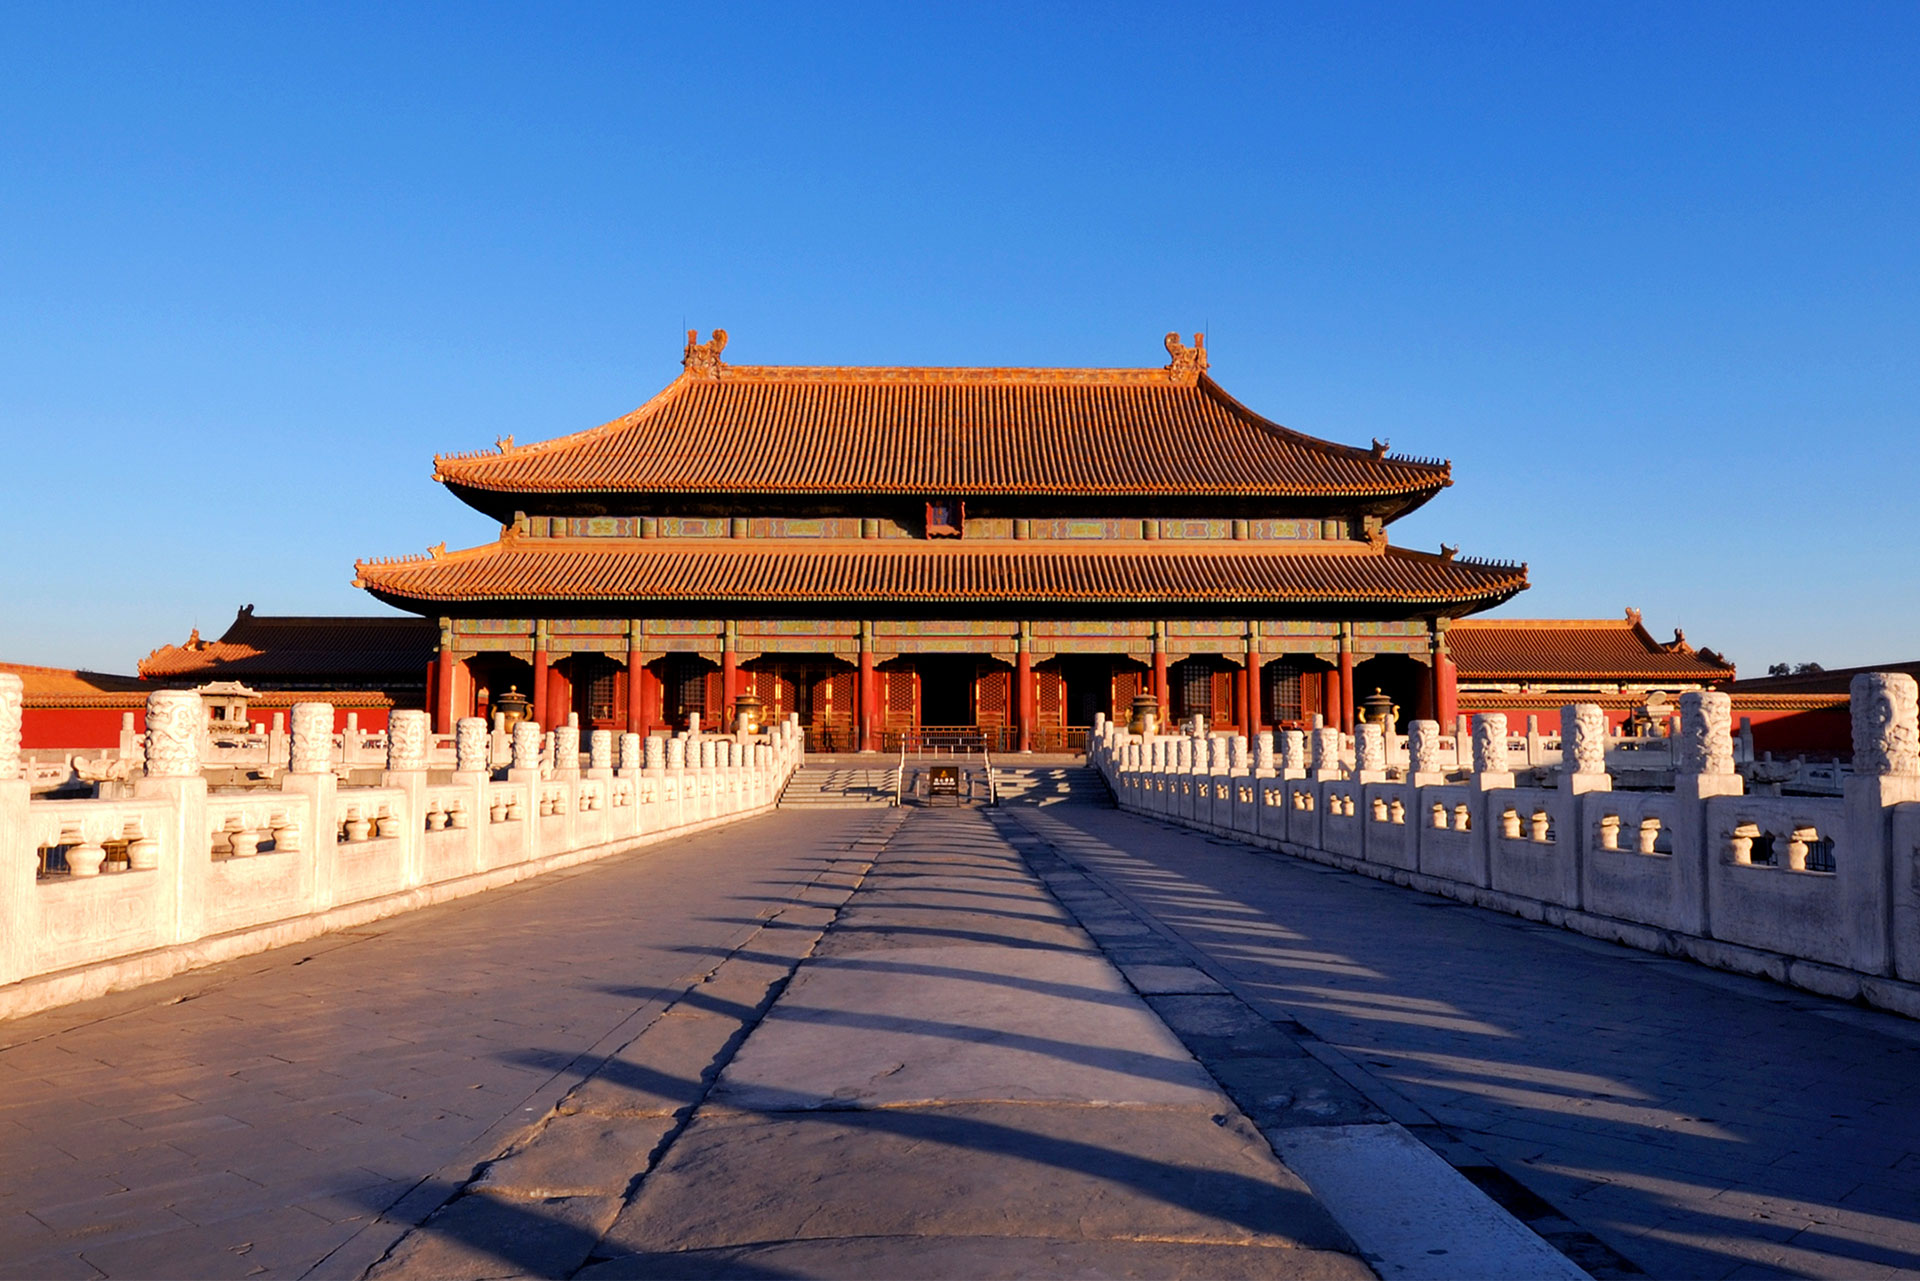 China - Forbidden City